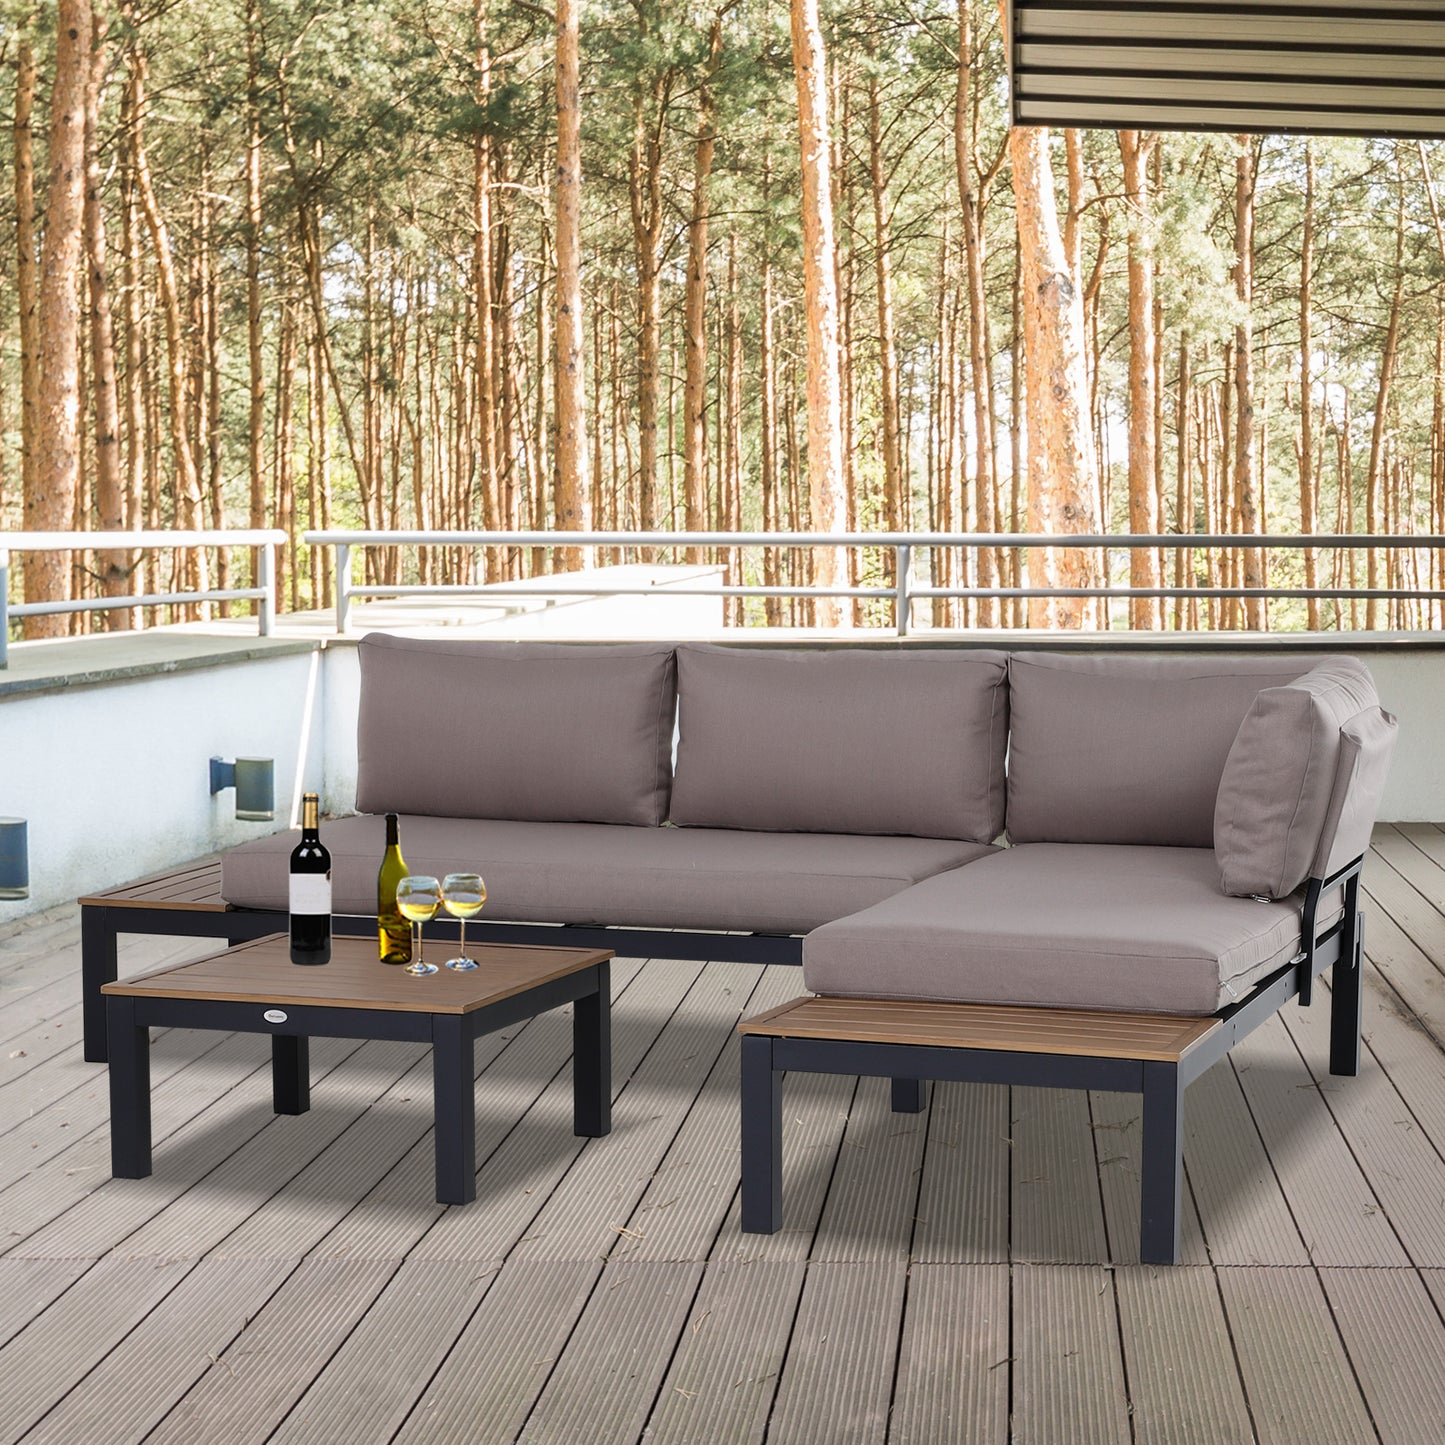 Outsunny 3-Piece Aluminium Frame Outdoor Garden Furniture Set Mixed Grey